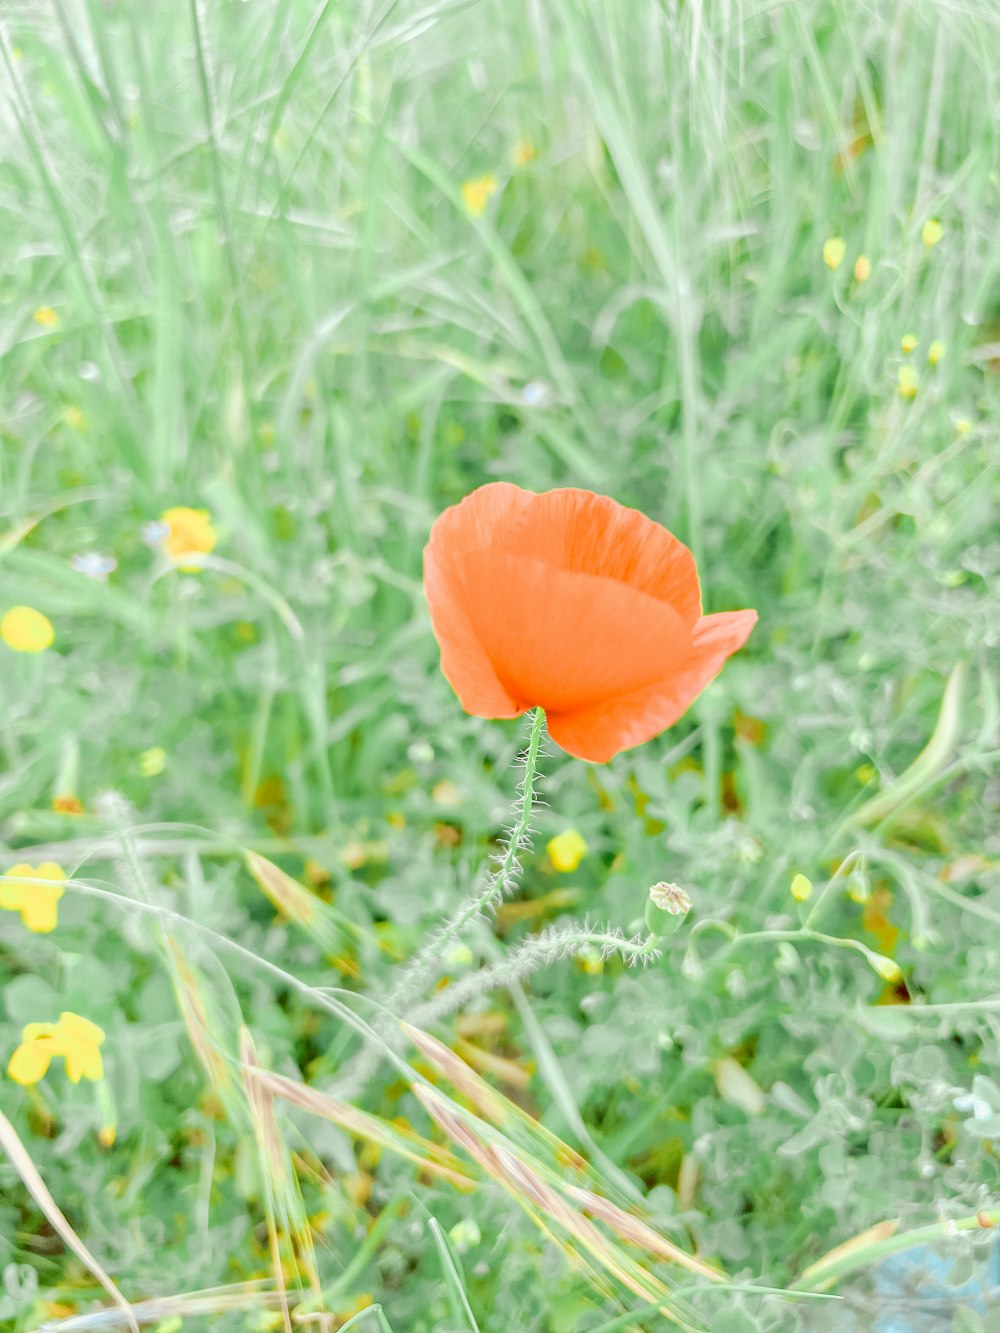 a single orange flower in a field of green grass